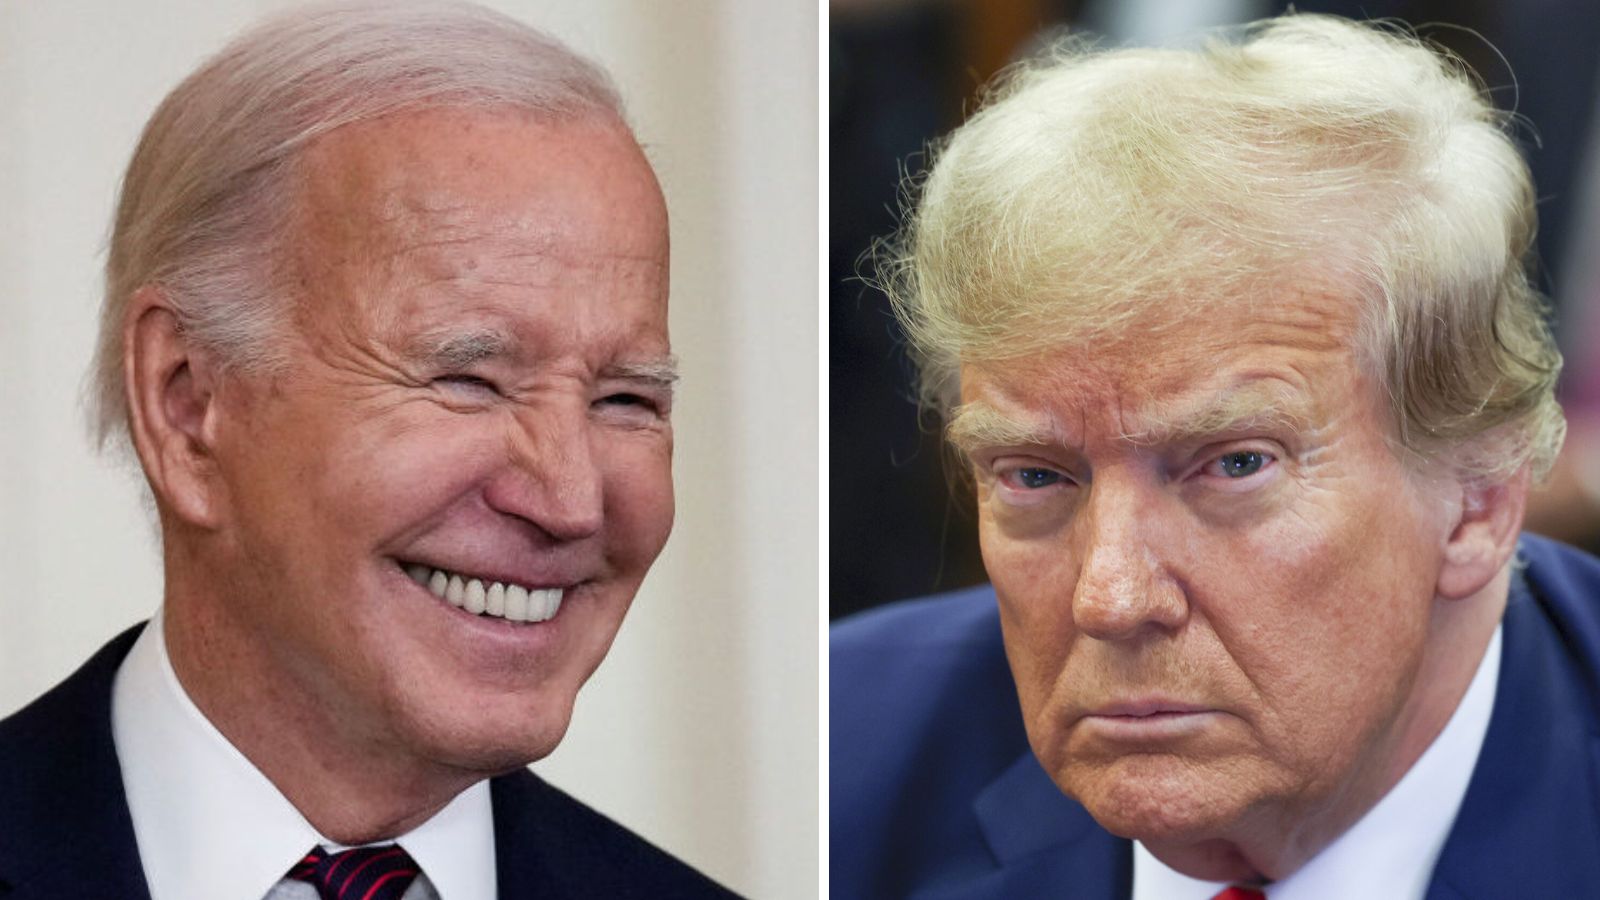 Joe Biden, Donald Trump win in Arizona's Presidential Preference Election